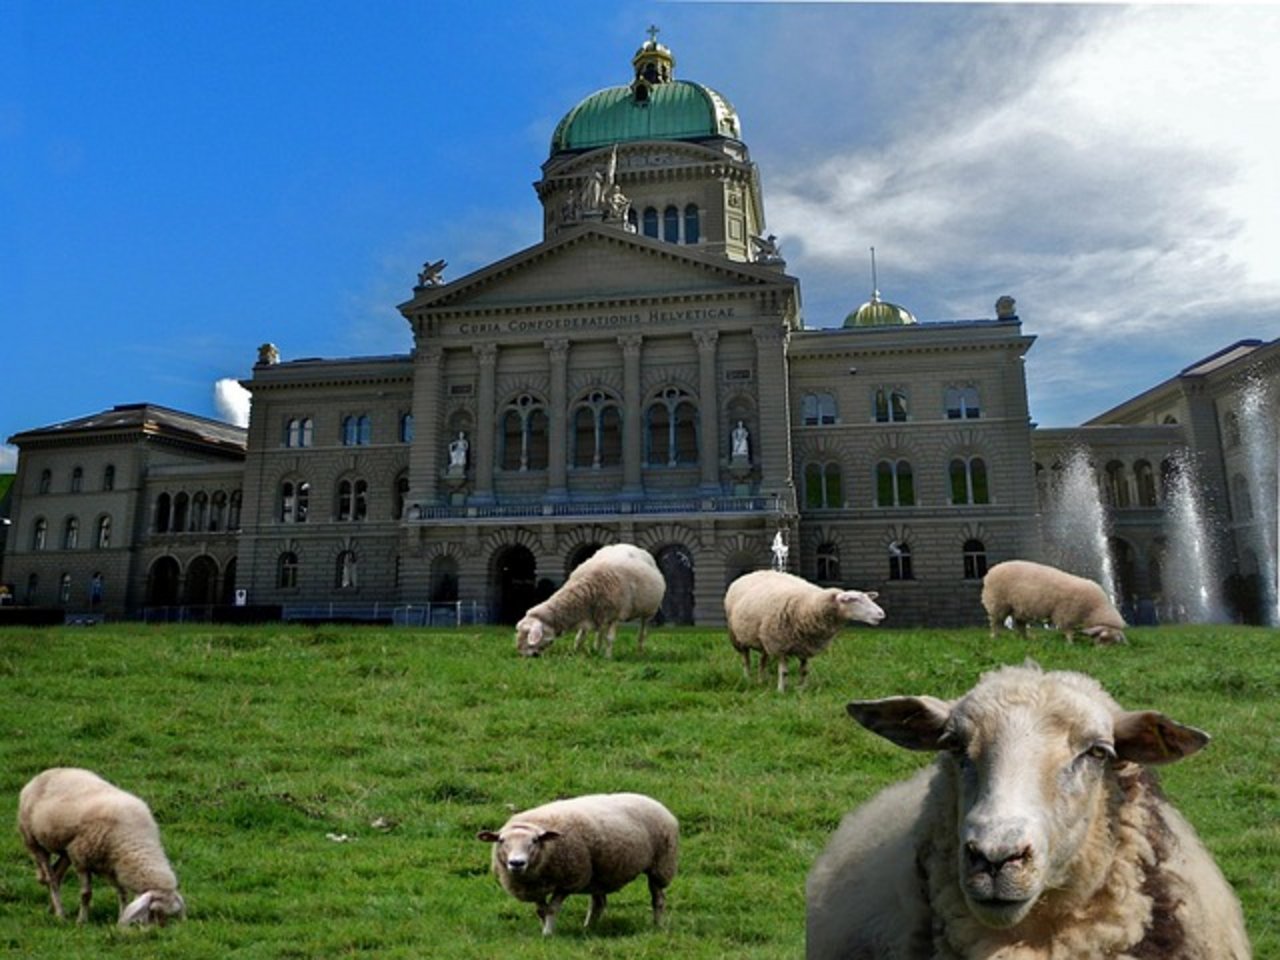 Schafe die vor dem 1. Januar 2020 geboren sind und nur eine Ohrmarke haben, müssen nachgekennzeichnet werden. (Bild Pixabay)